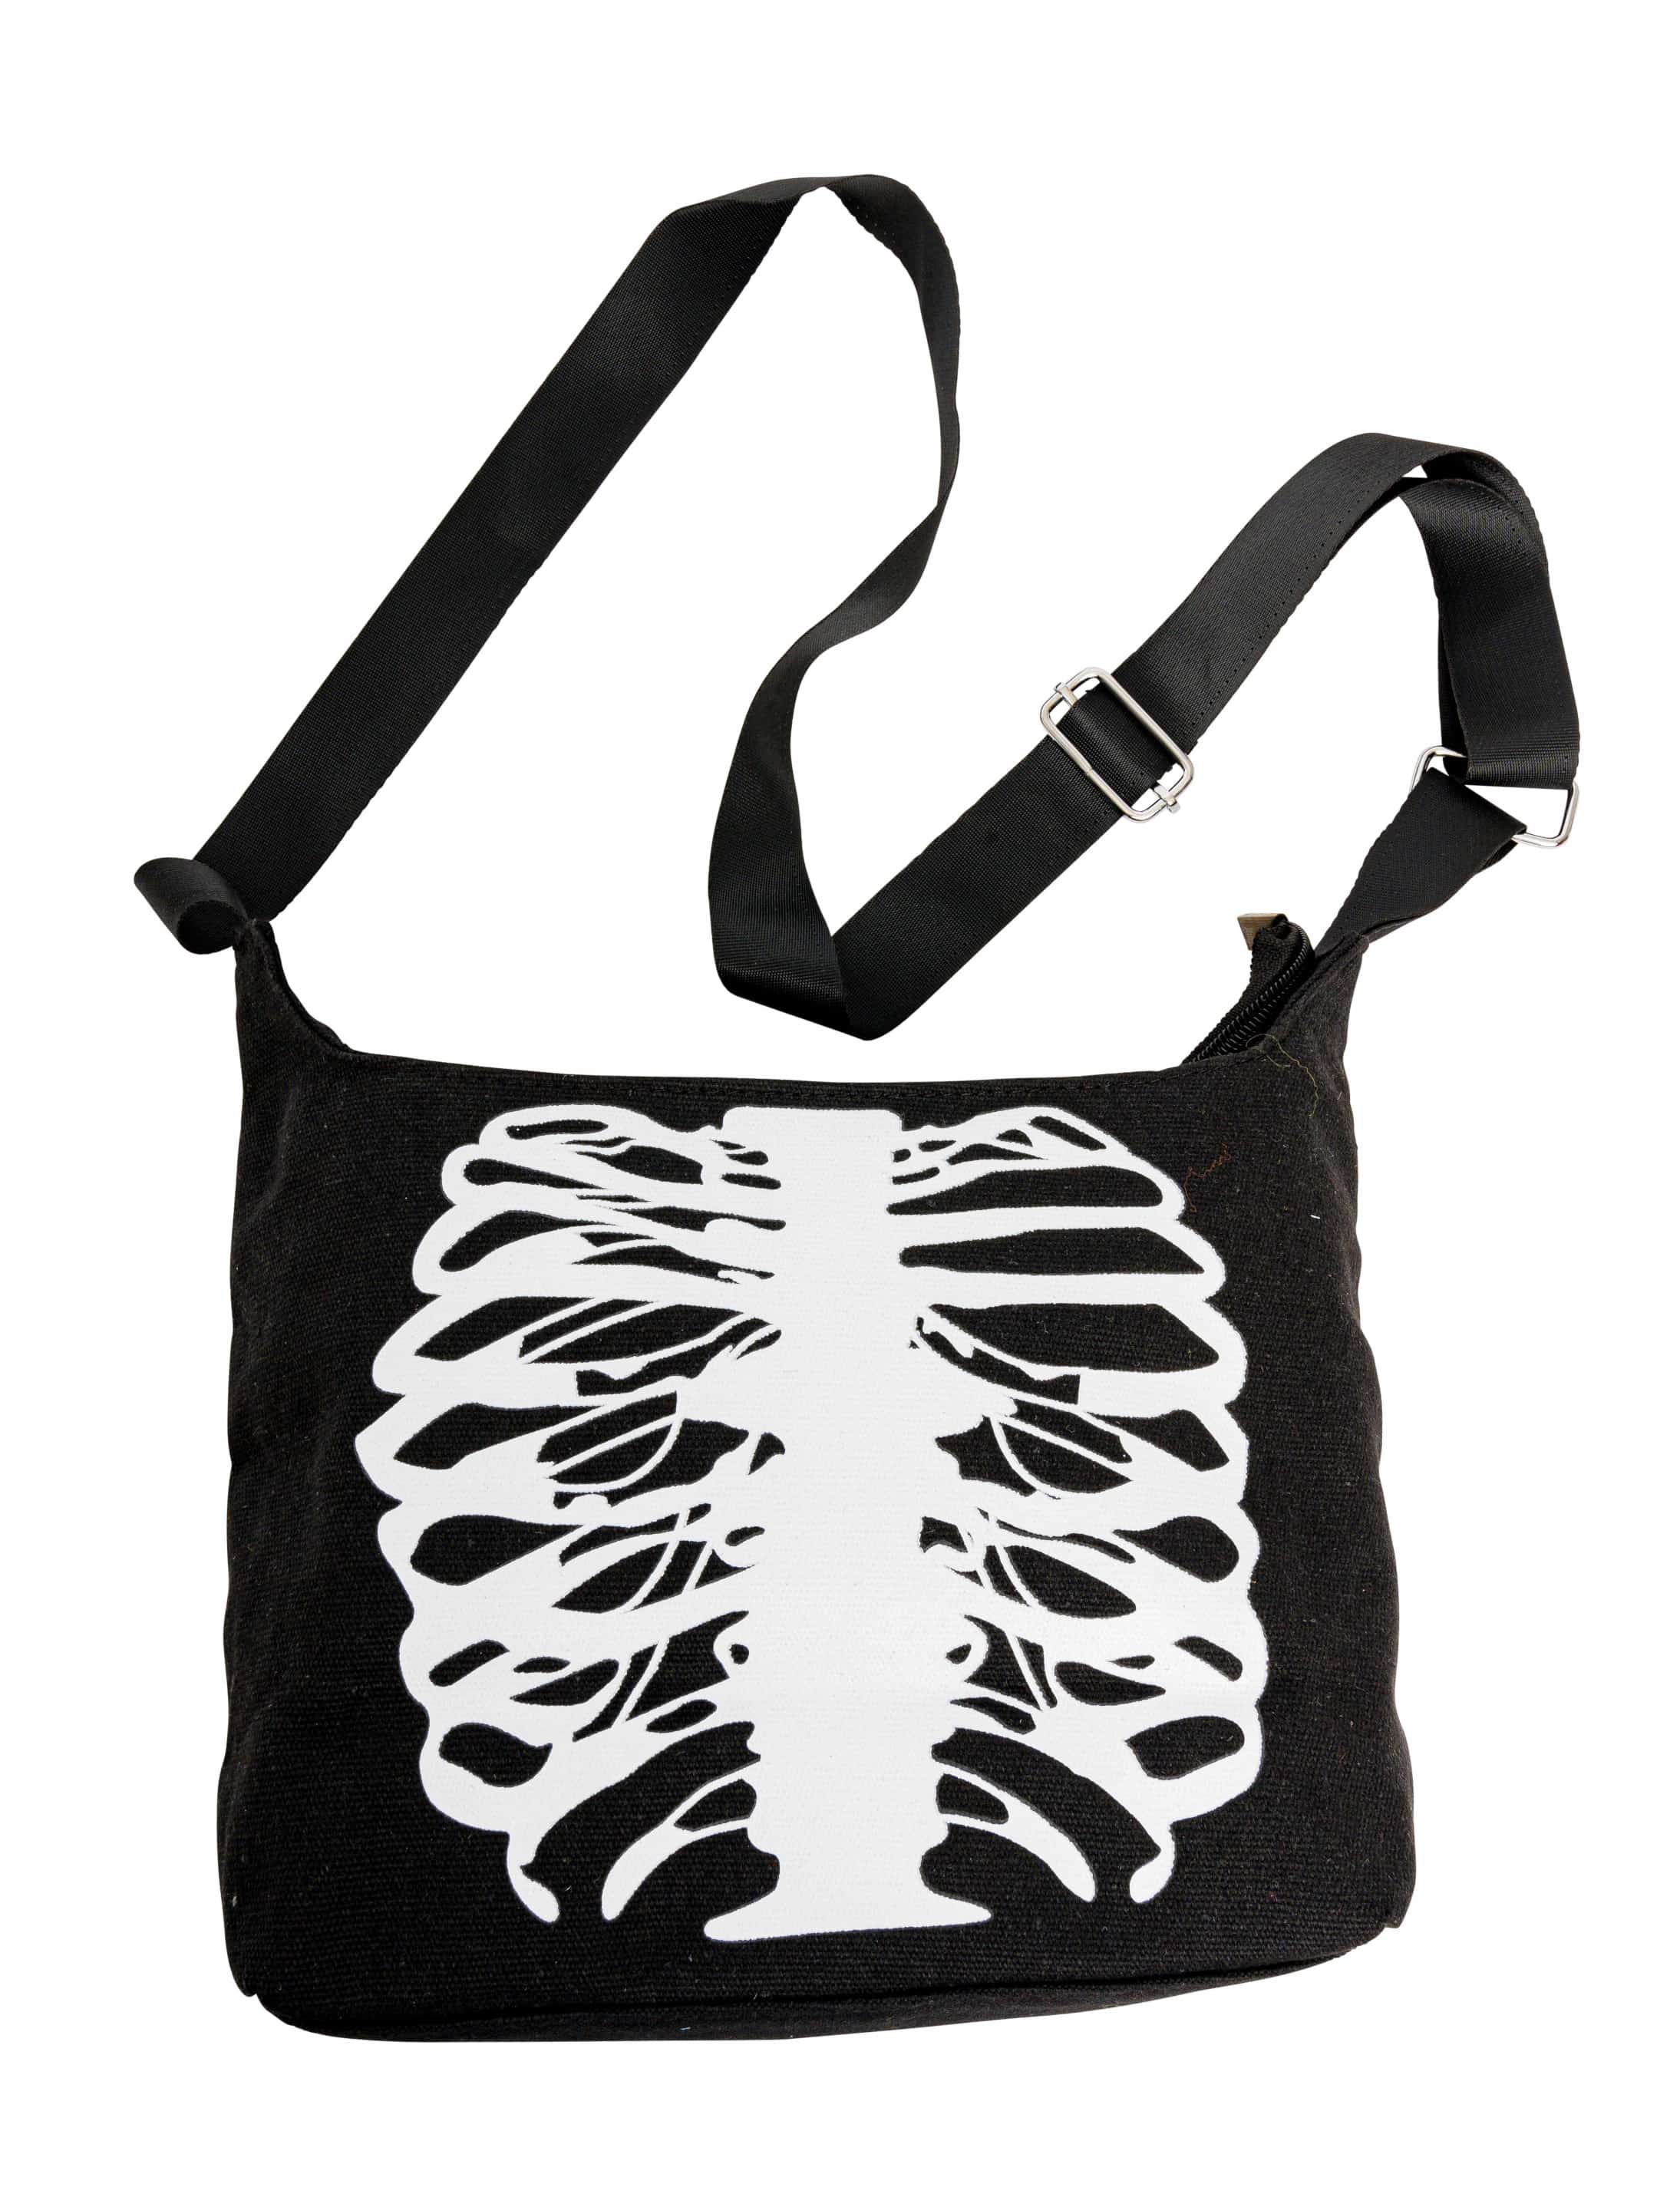 Tasche Skelett Brustkorb schwarz/weiß